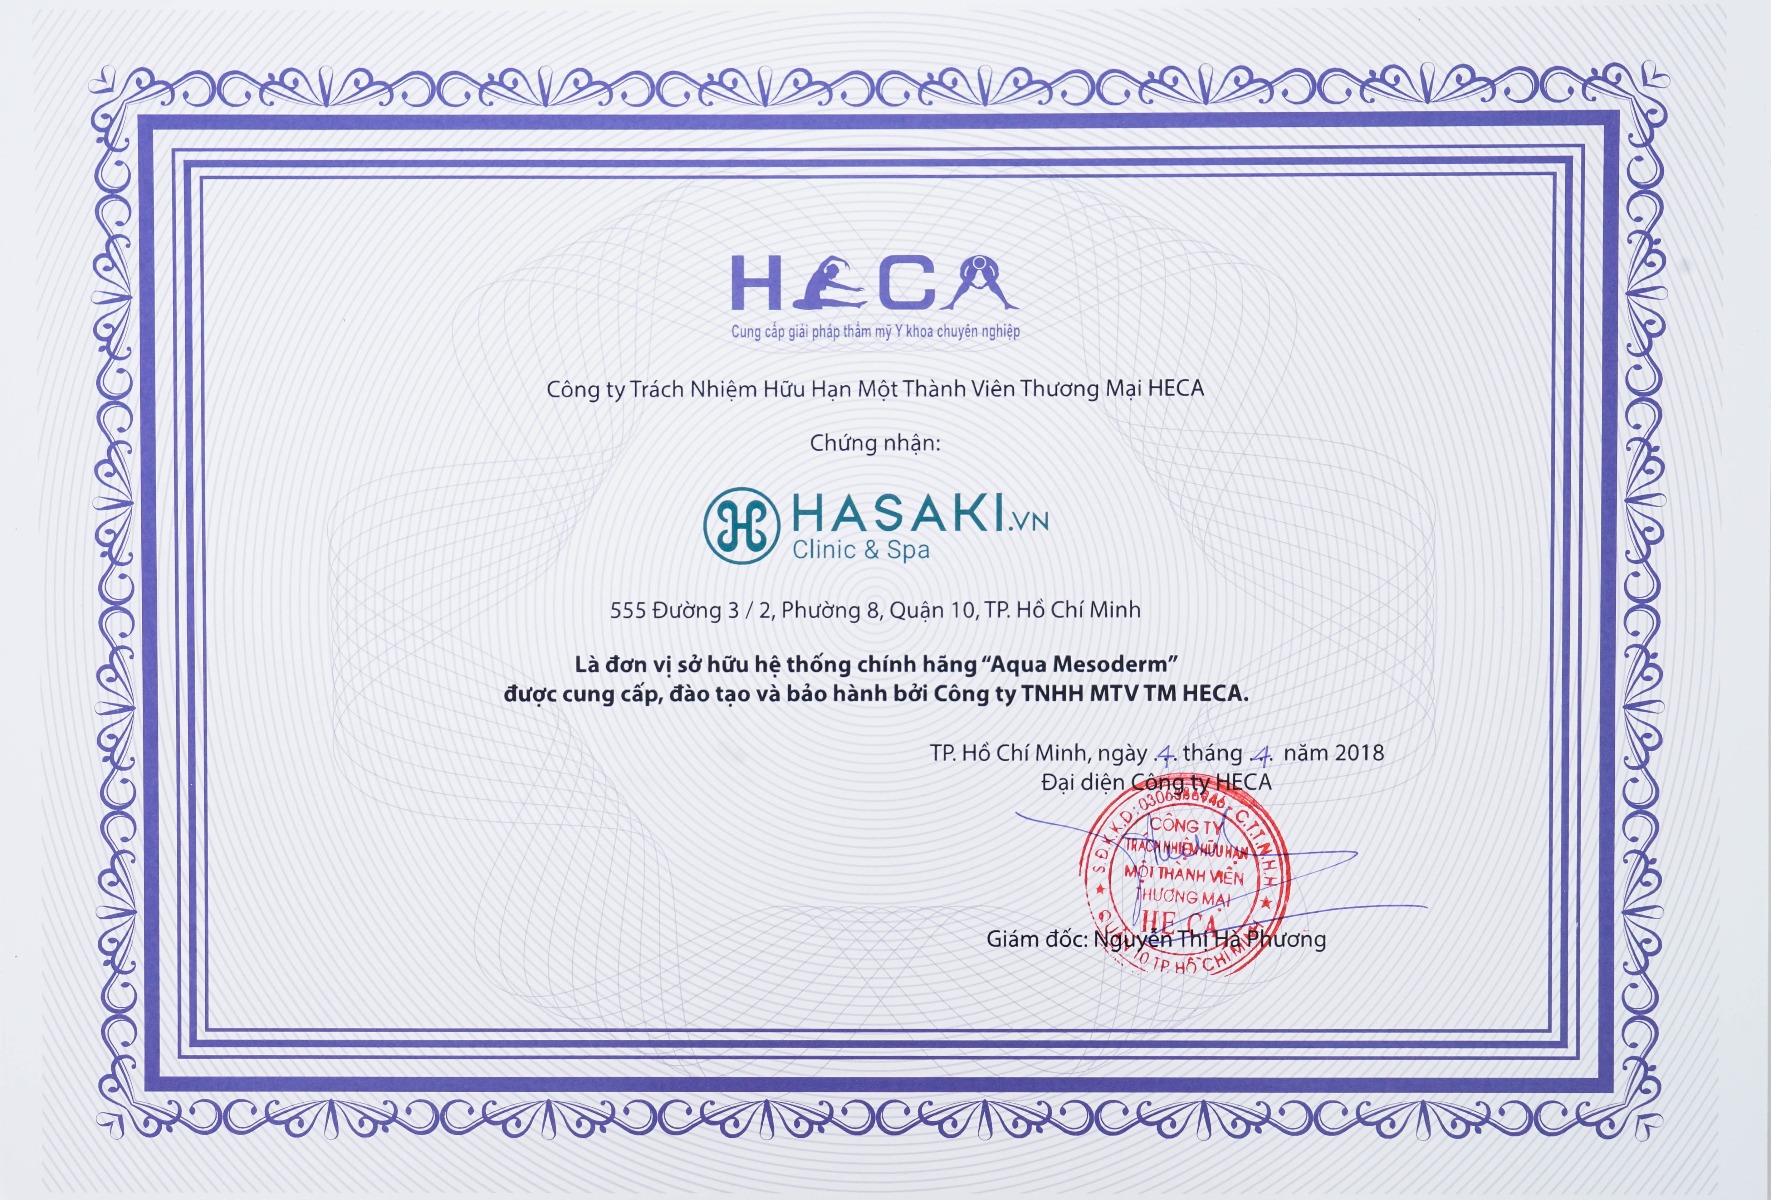 Hasaki Clinic cam kết sở hữu công nghệ Aqua Mesoderm chính hãng